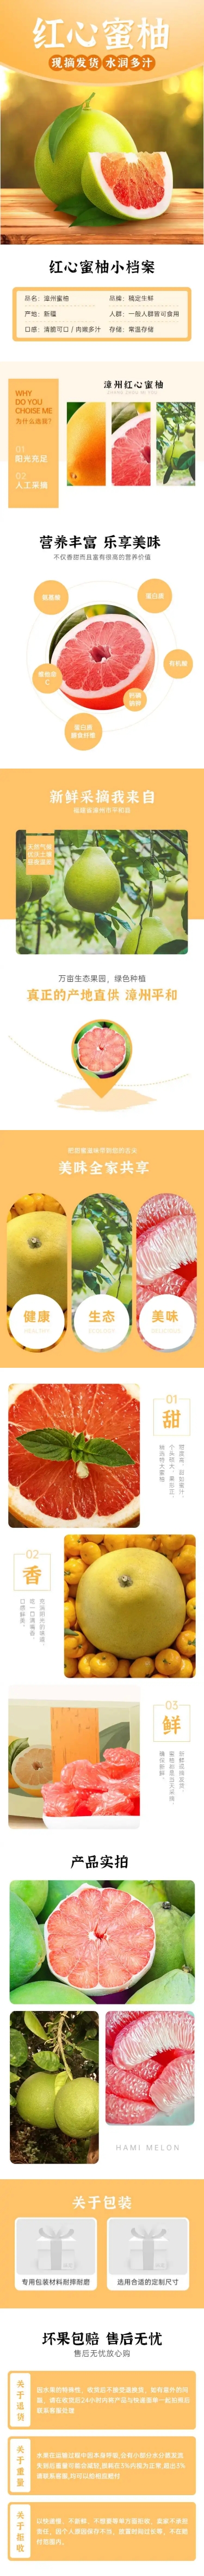 生鲜食品水果柚子详情页预览效果